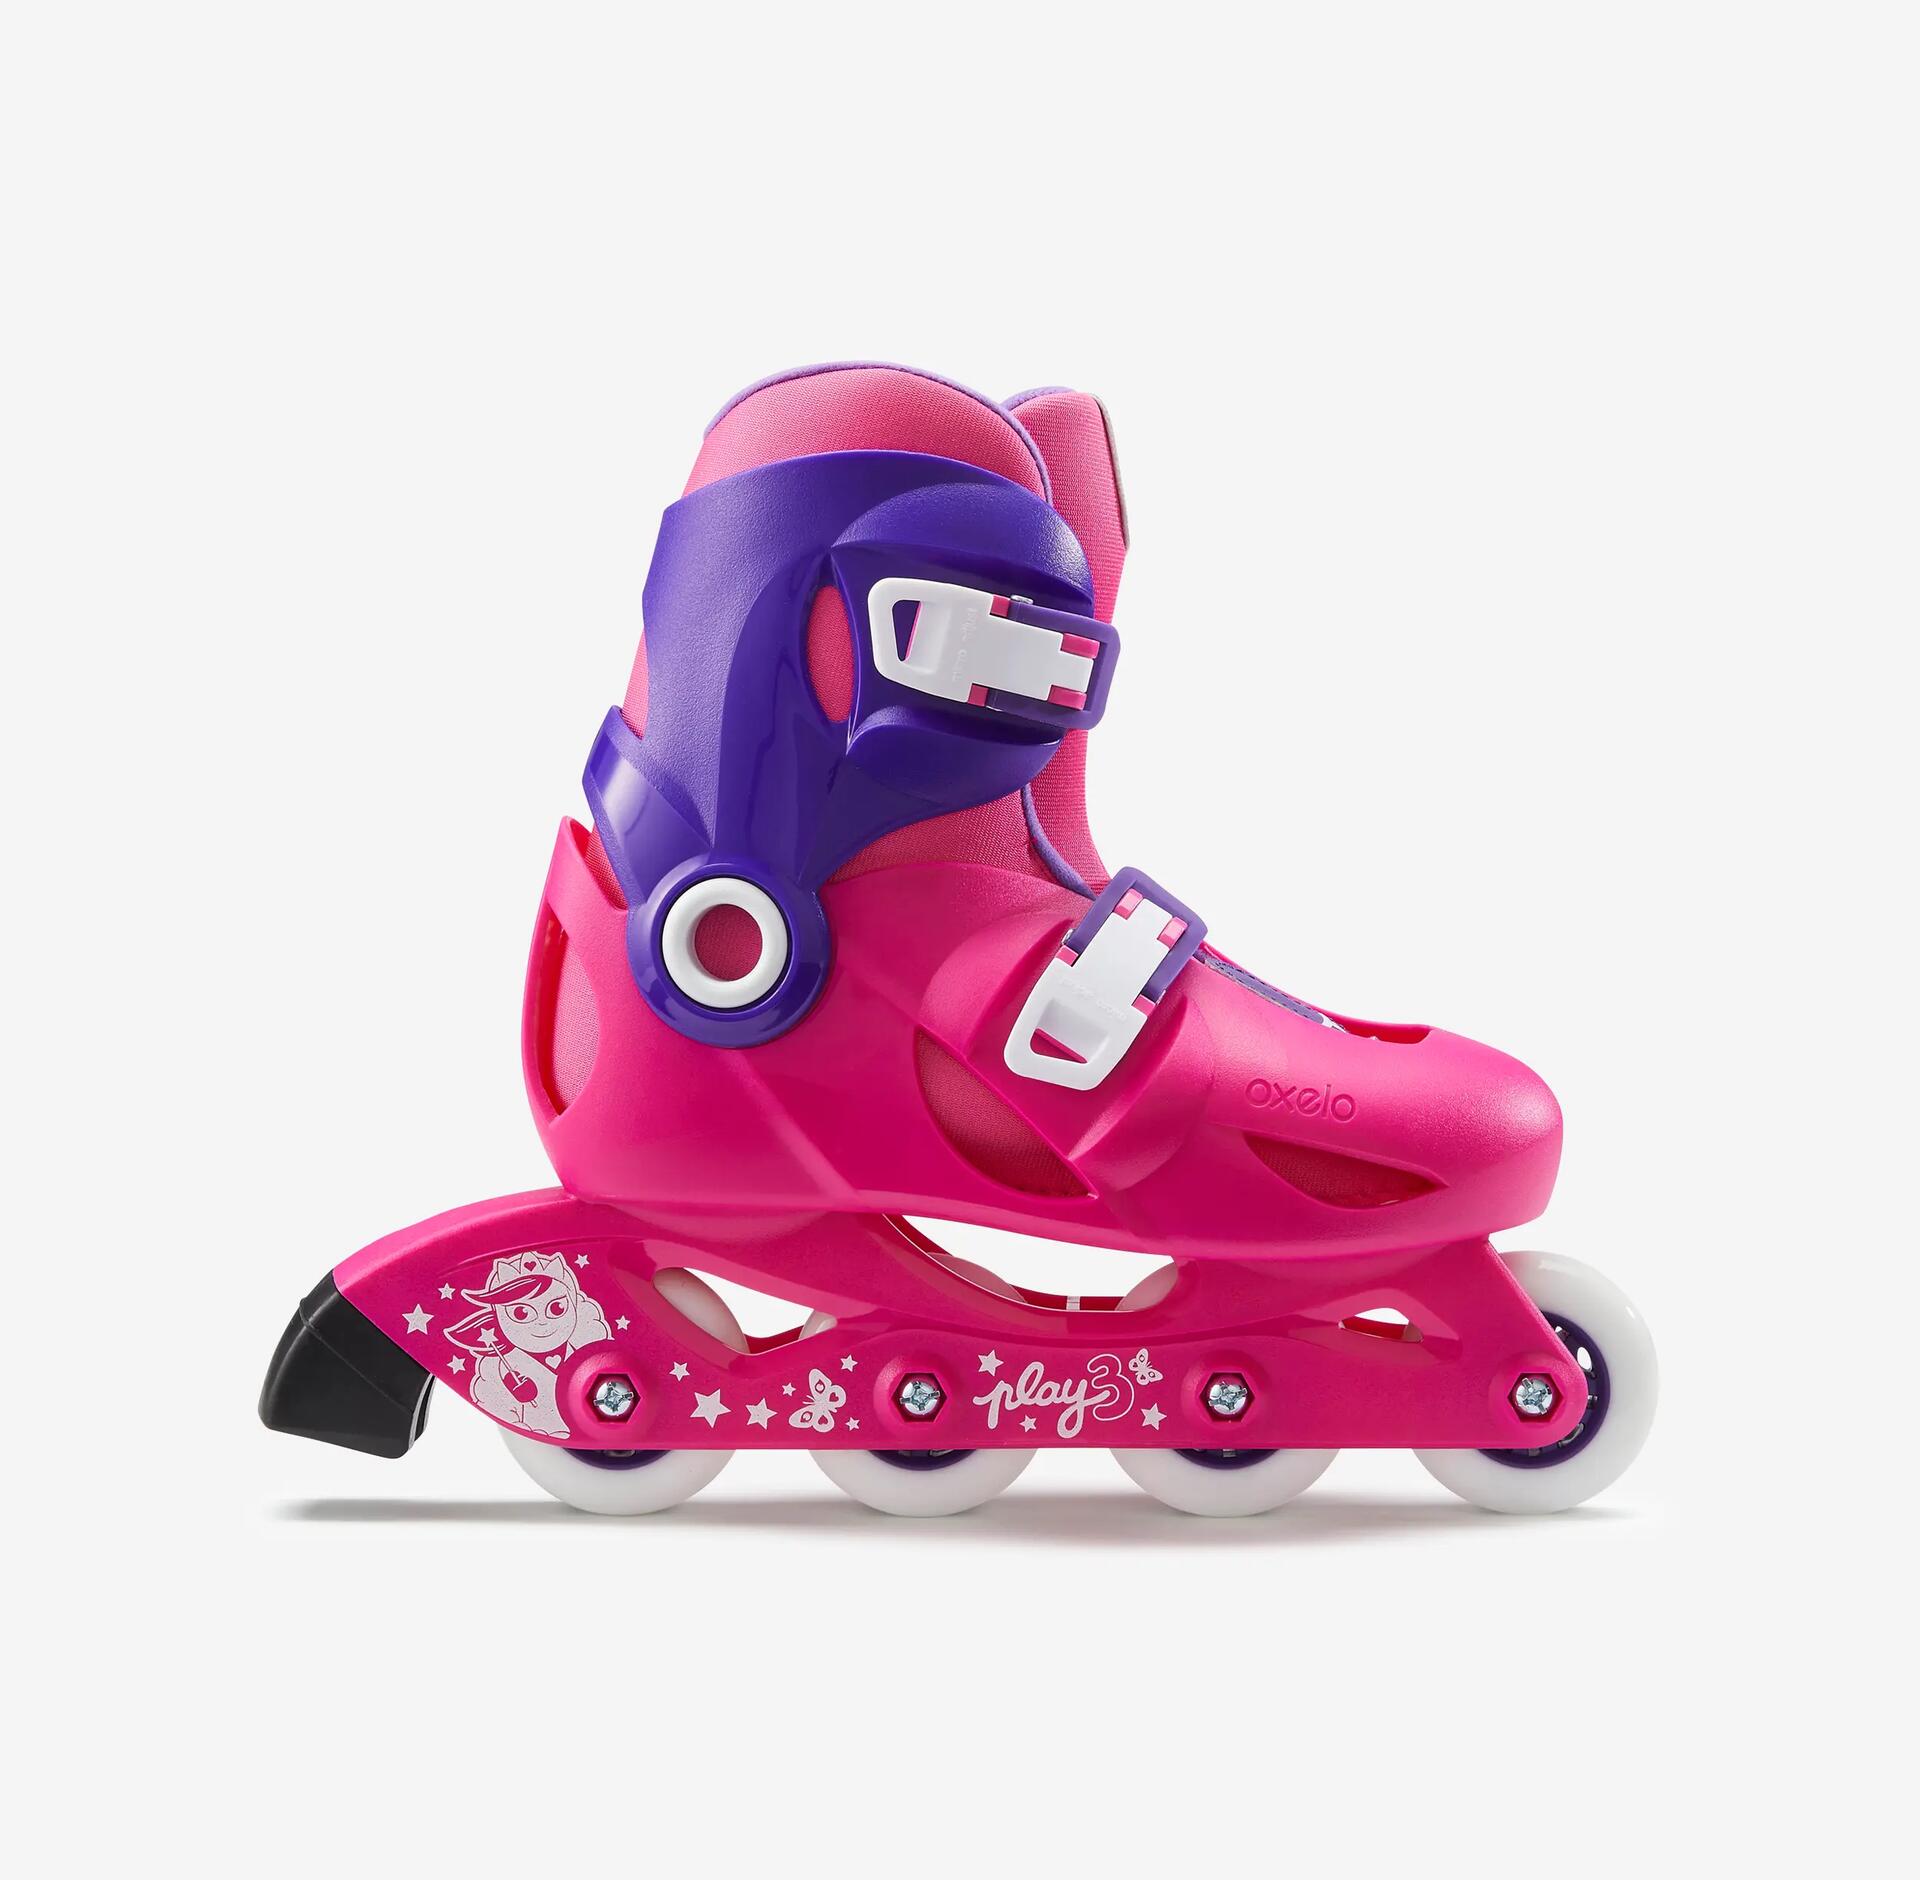 Roller / patins a roulette enfant violet